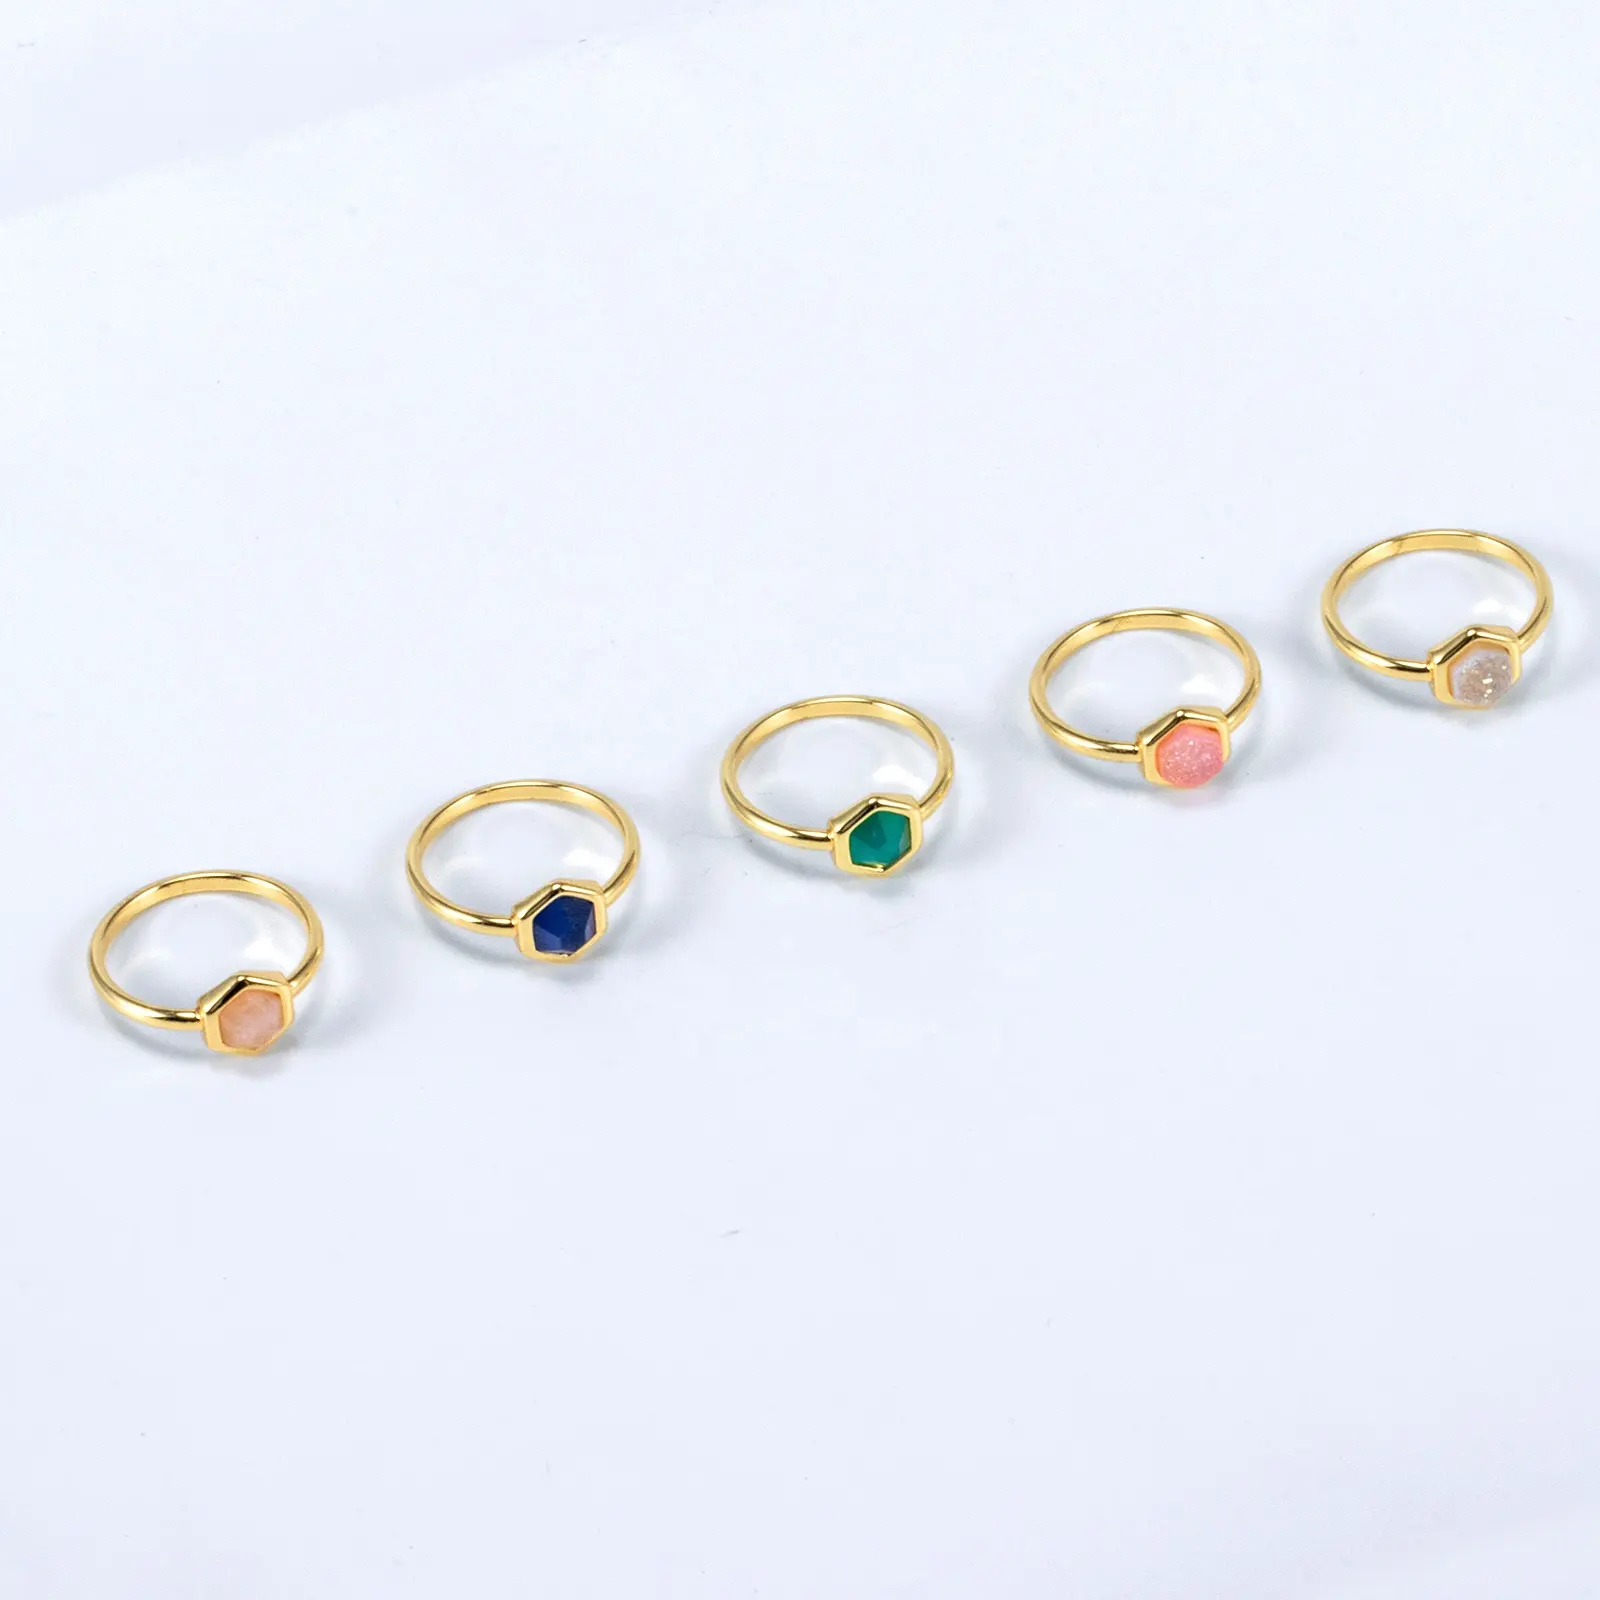 Conjunto de anillos de piedra Natural coloridos, anillos de piedra cuadrados hexagonales, joyería para mujer, anillos de joyería de latón de acero inoxidable chapado en oro de 14K